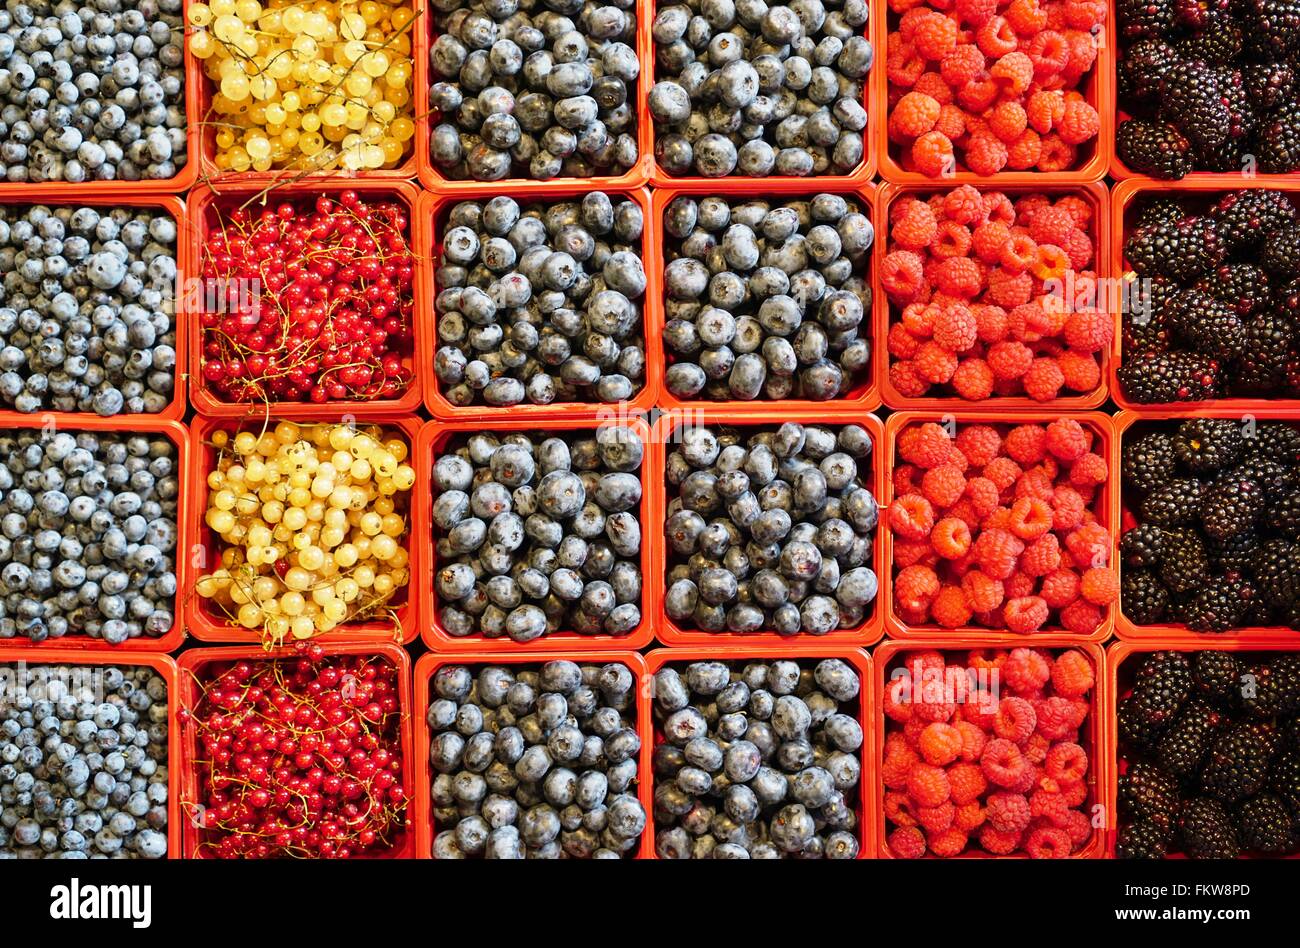 Fruits des carrés colorés dans les conteneurs dans le farmers market Banque D'Images